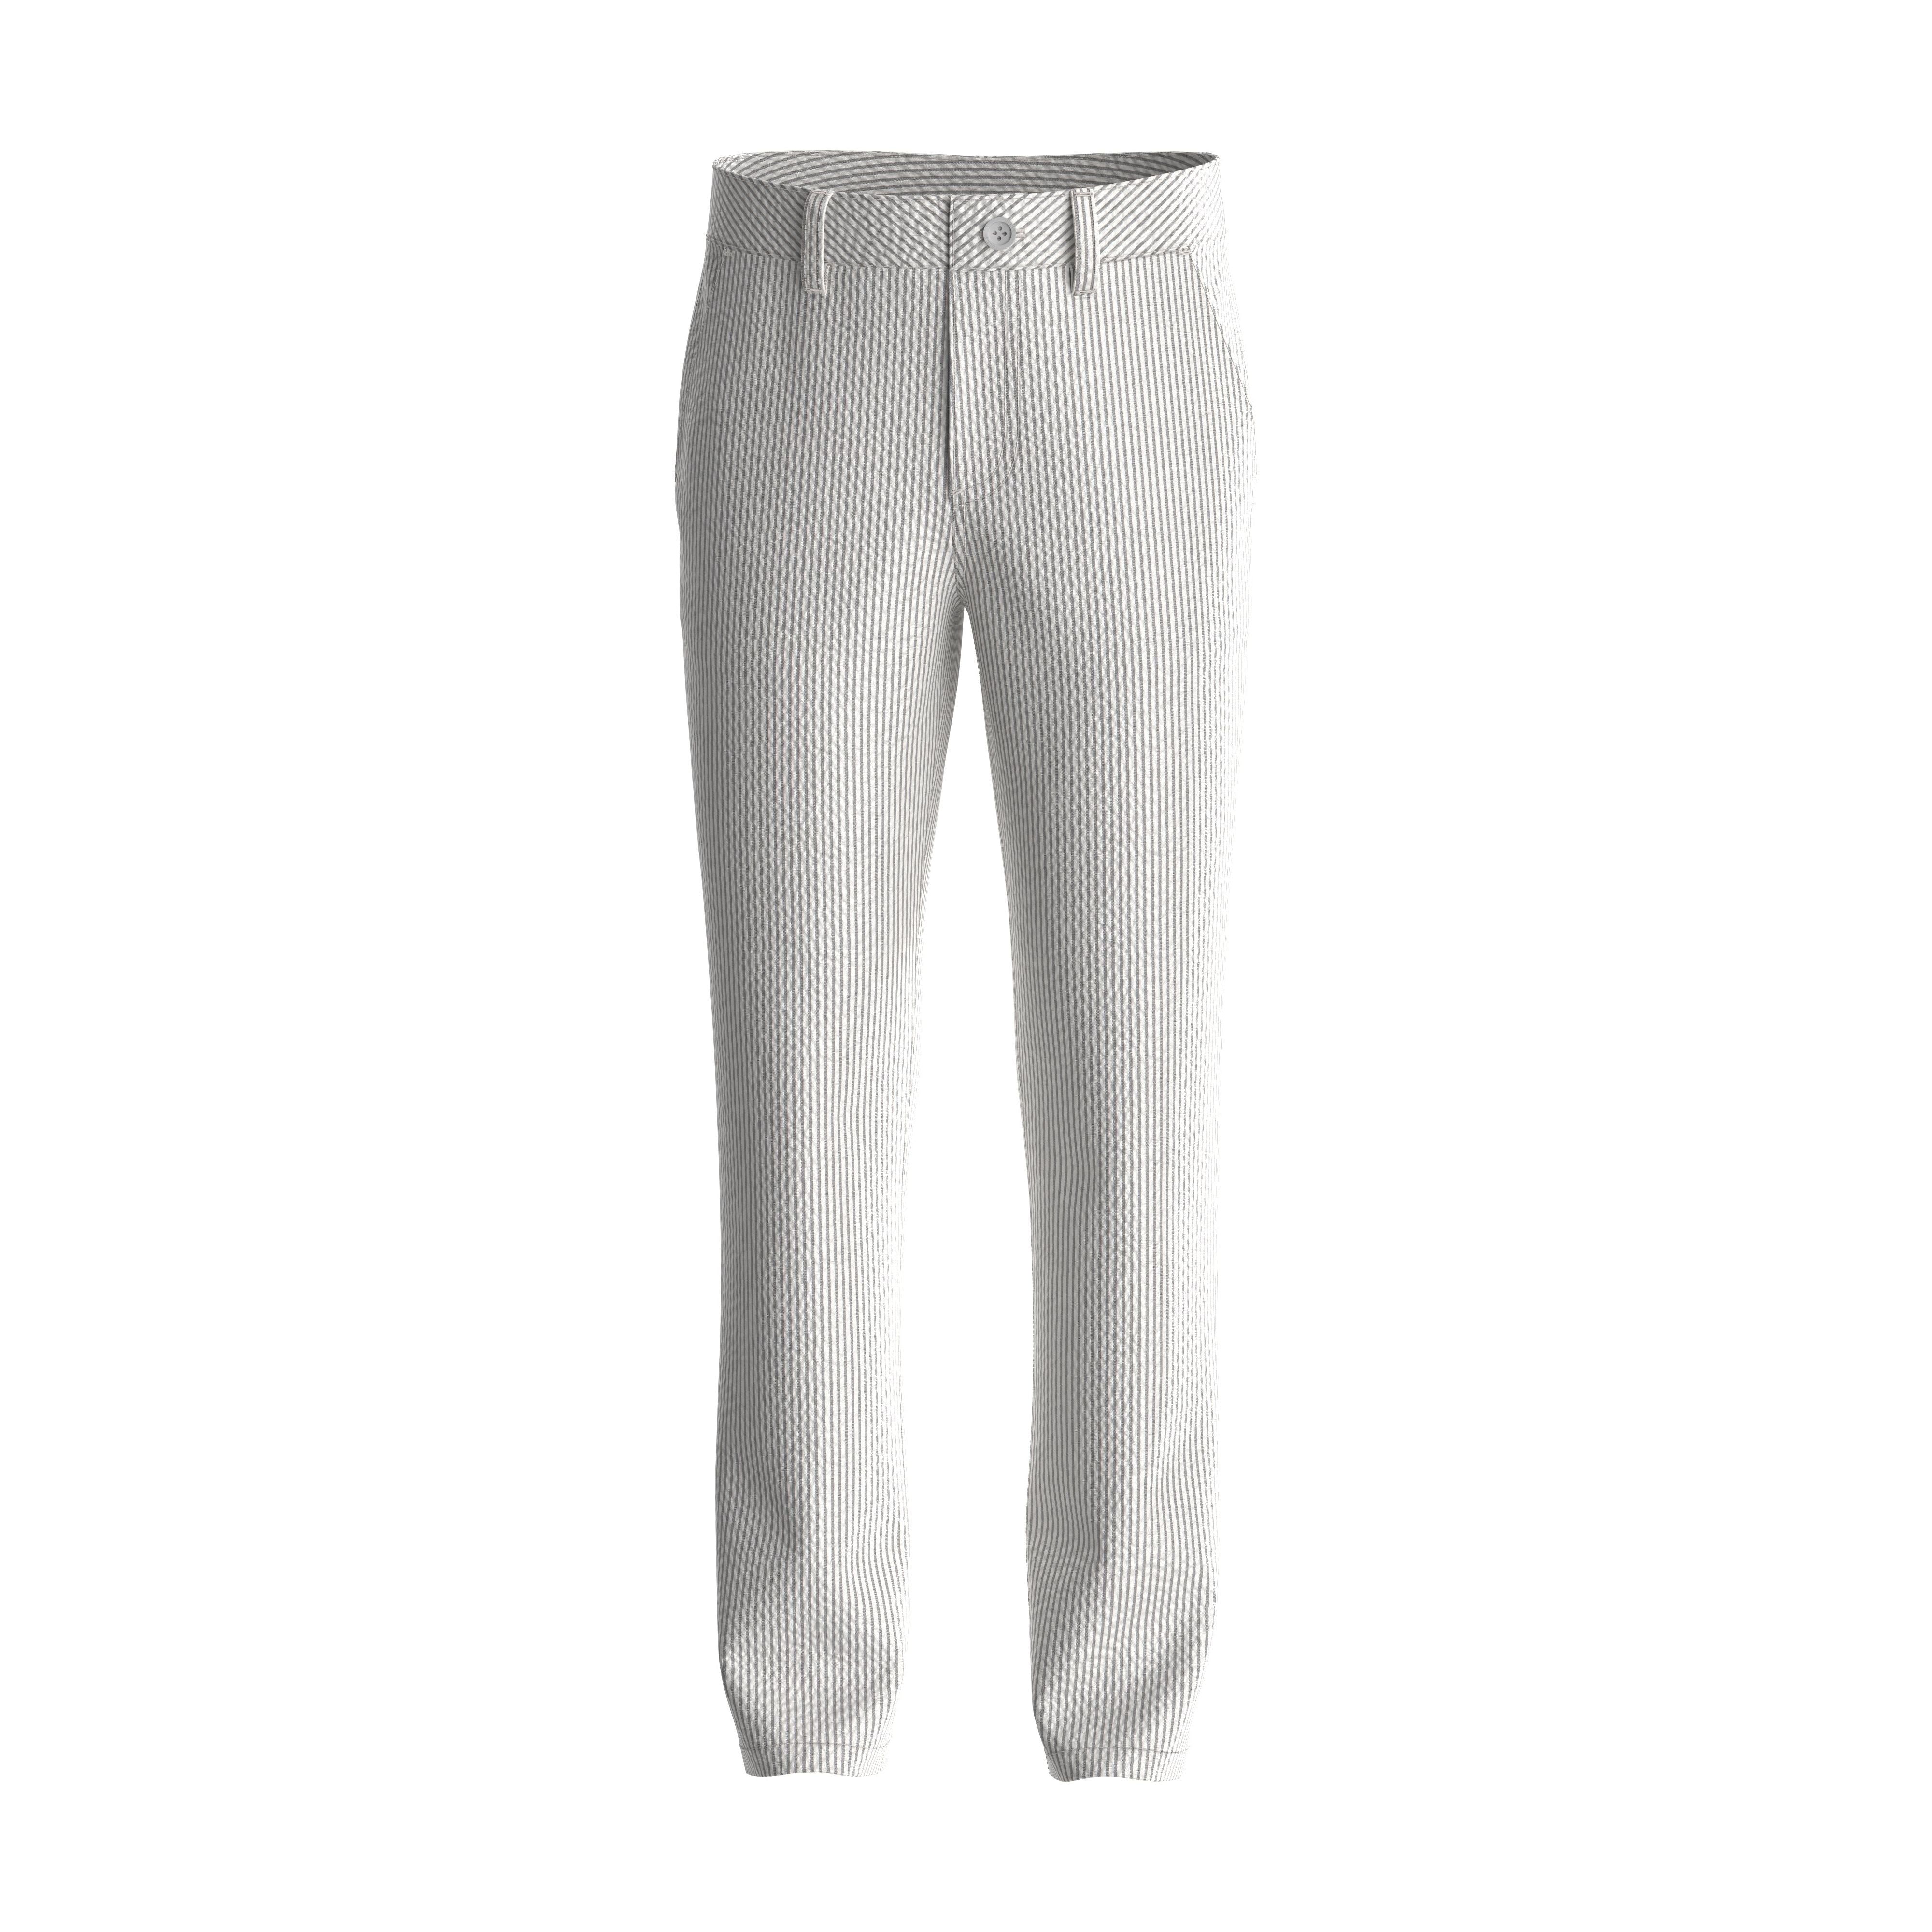 Guess - Boys Dress Pant in Grey/White Stripe